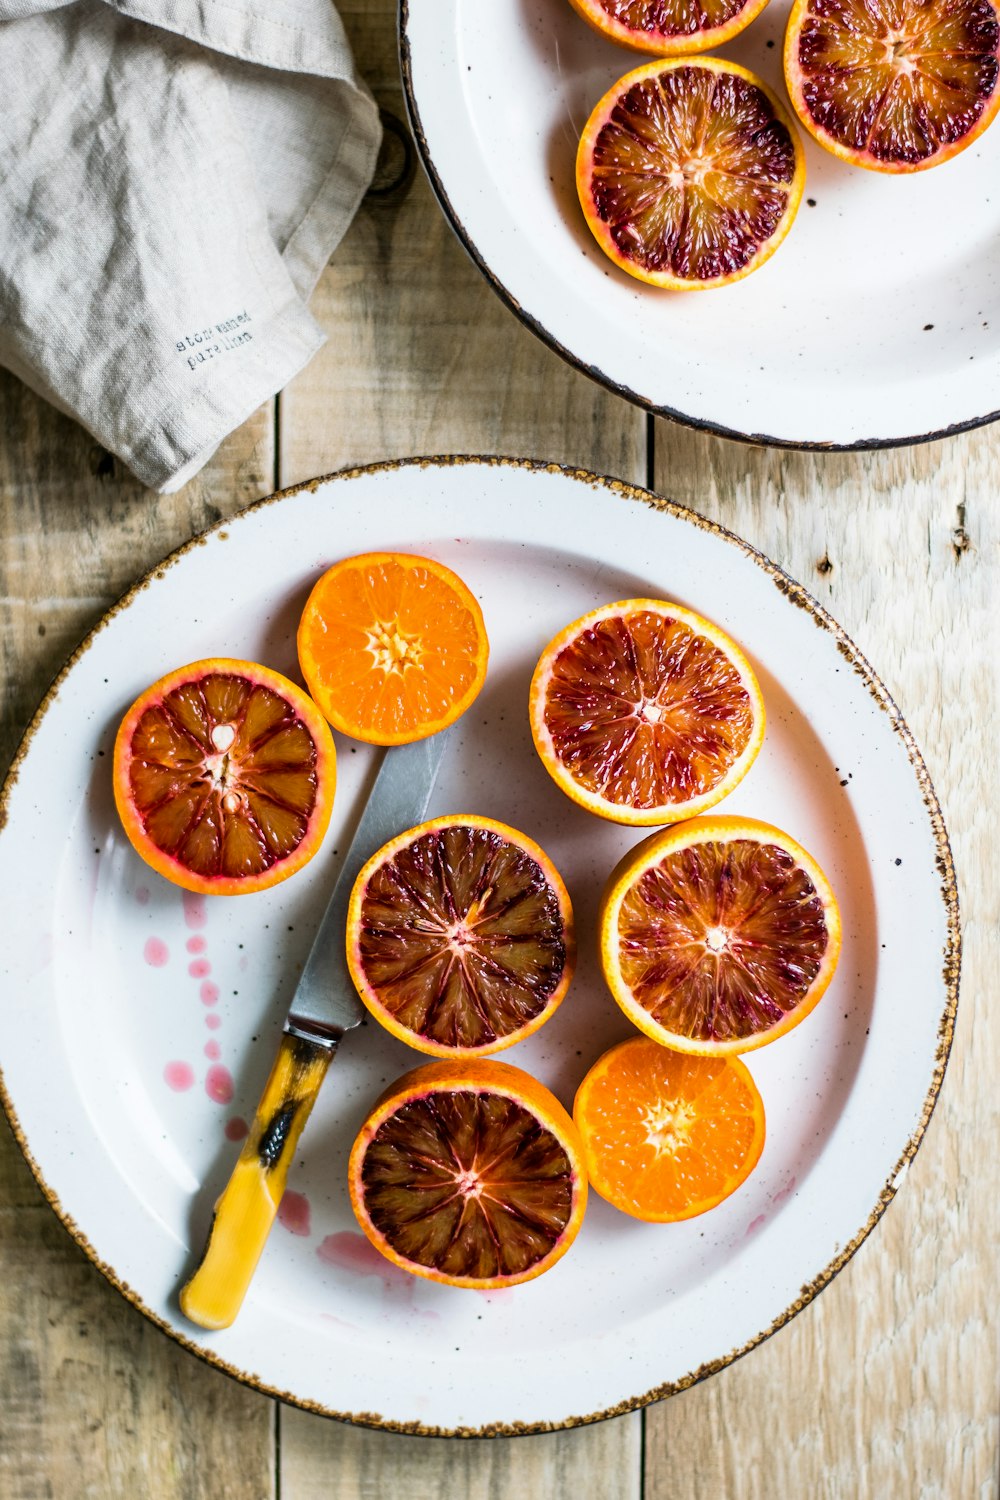 laranjas fatiadas na placa branca